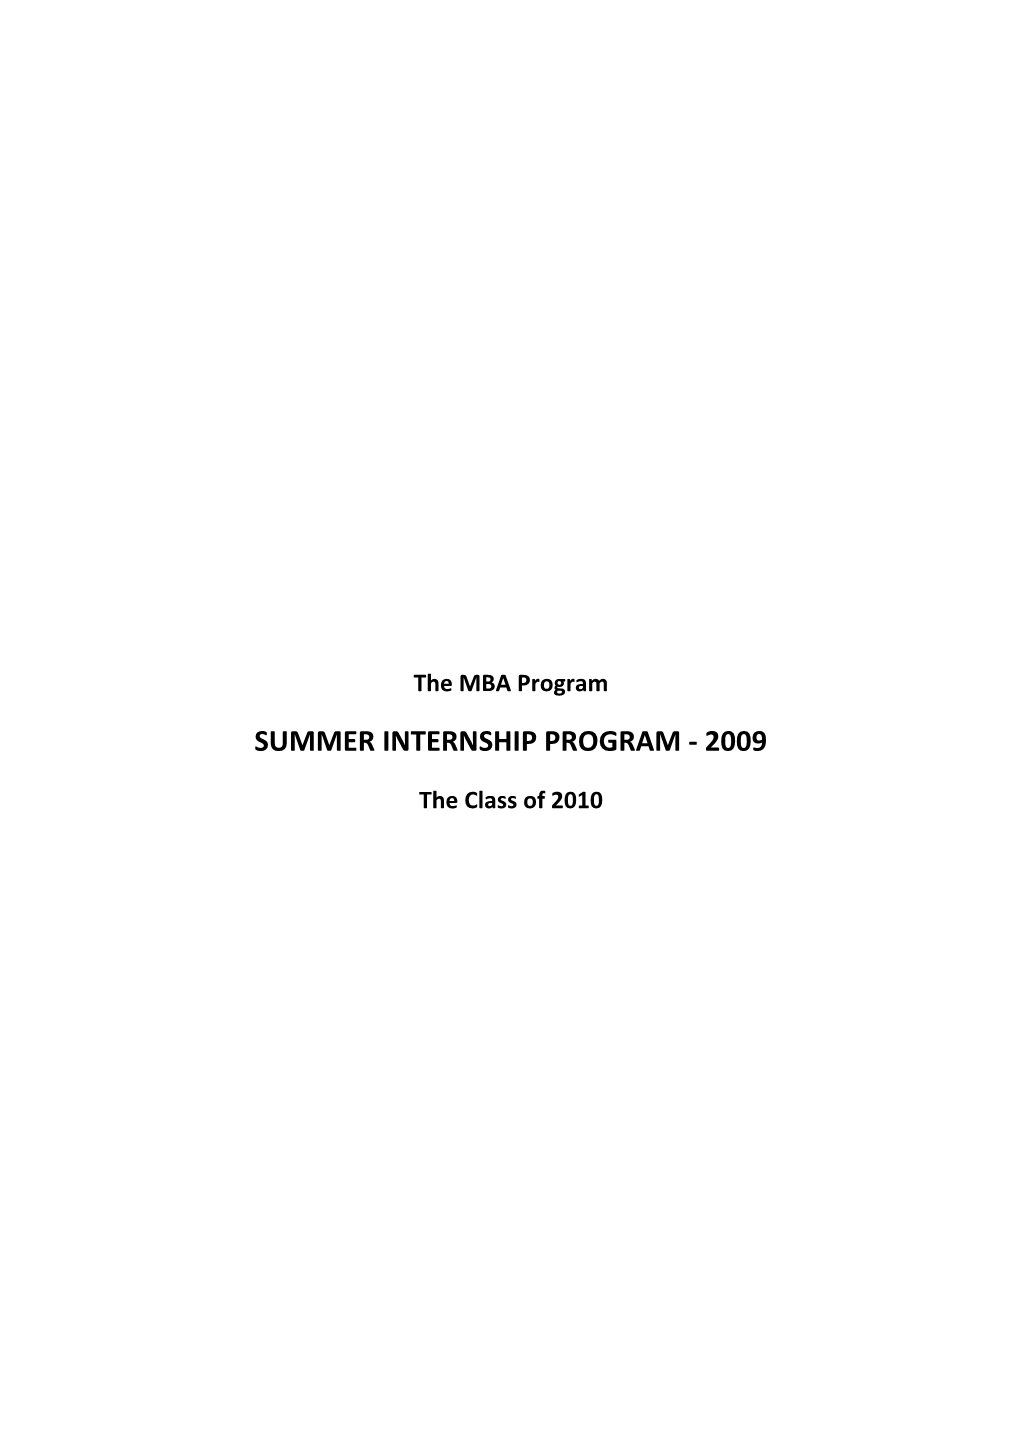 Summer Internship Program - 2009